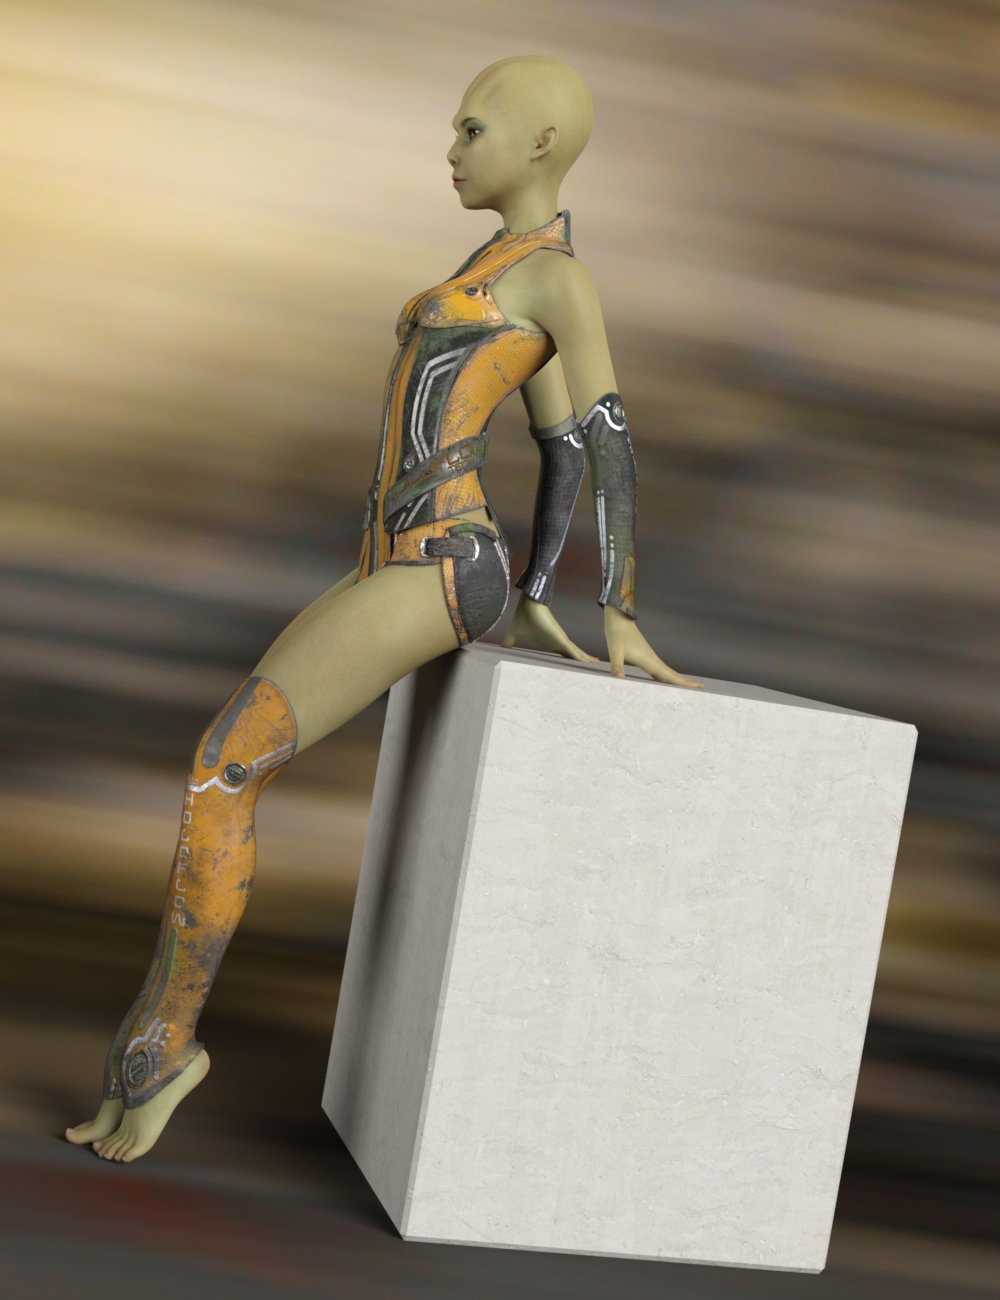 Kozue for Genesis 8 Female by: Warloc, 3D Models by Daz 3D